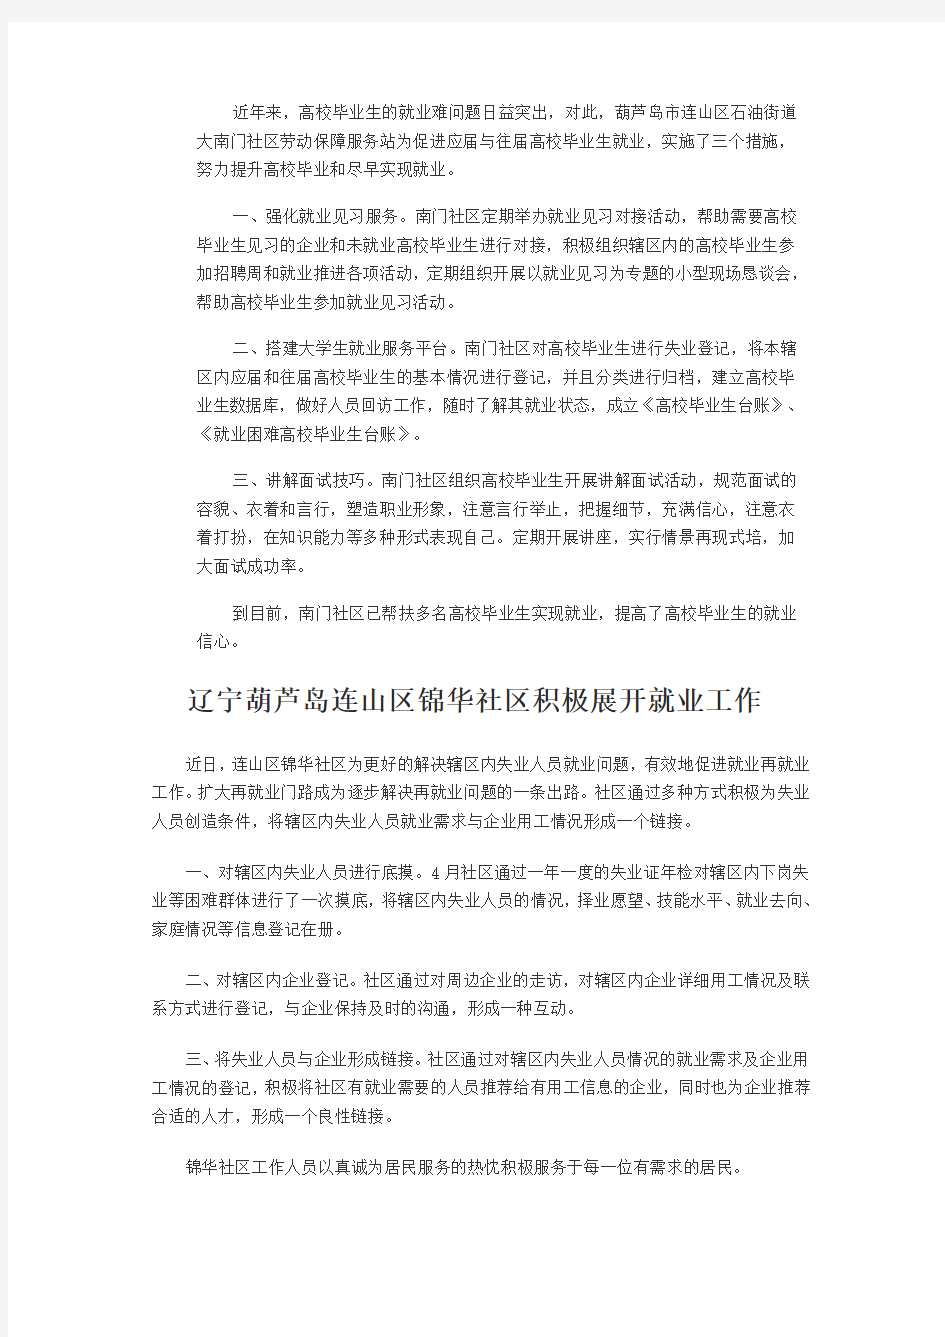 辽宁省葫芦岛连山区胜利社区四项措施促进失业人员再就业